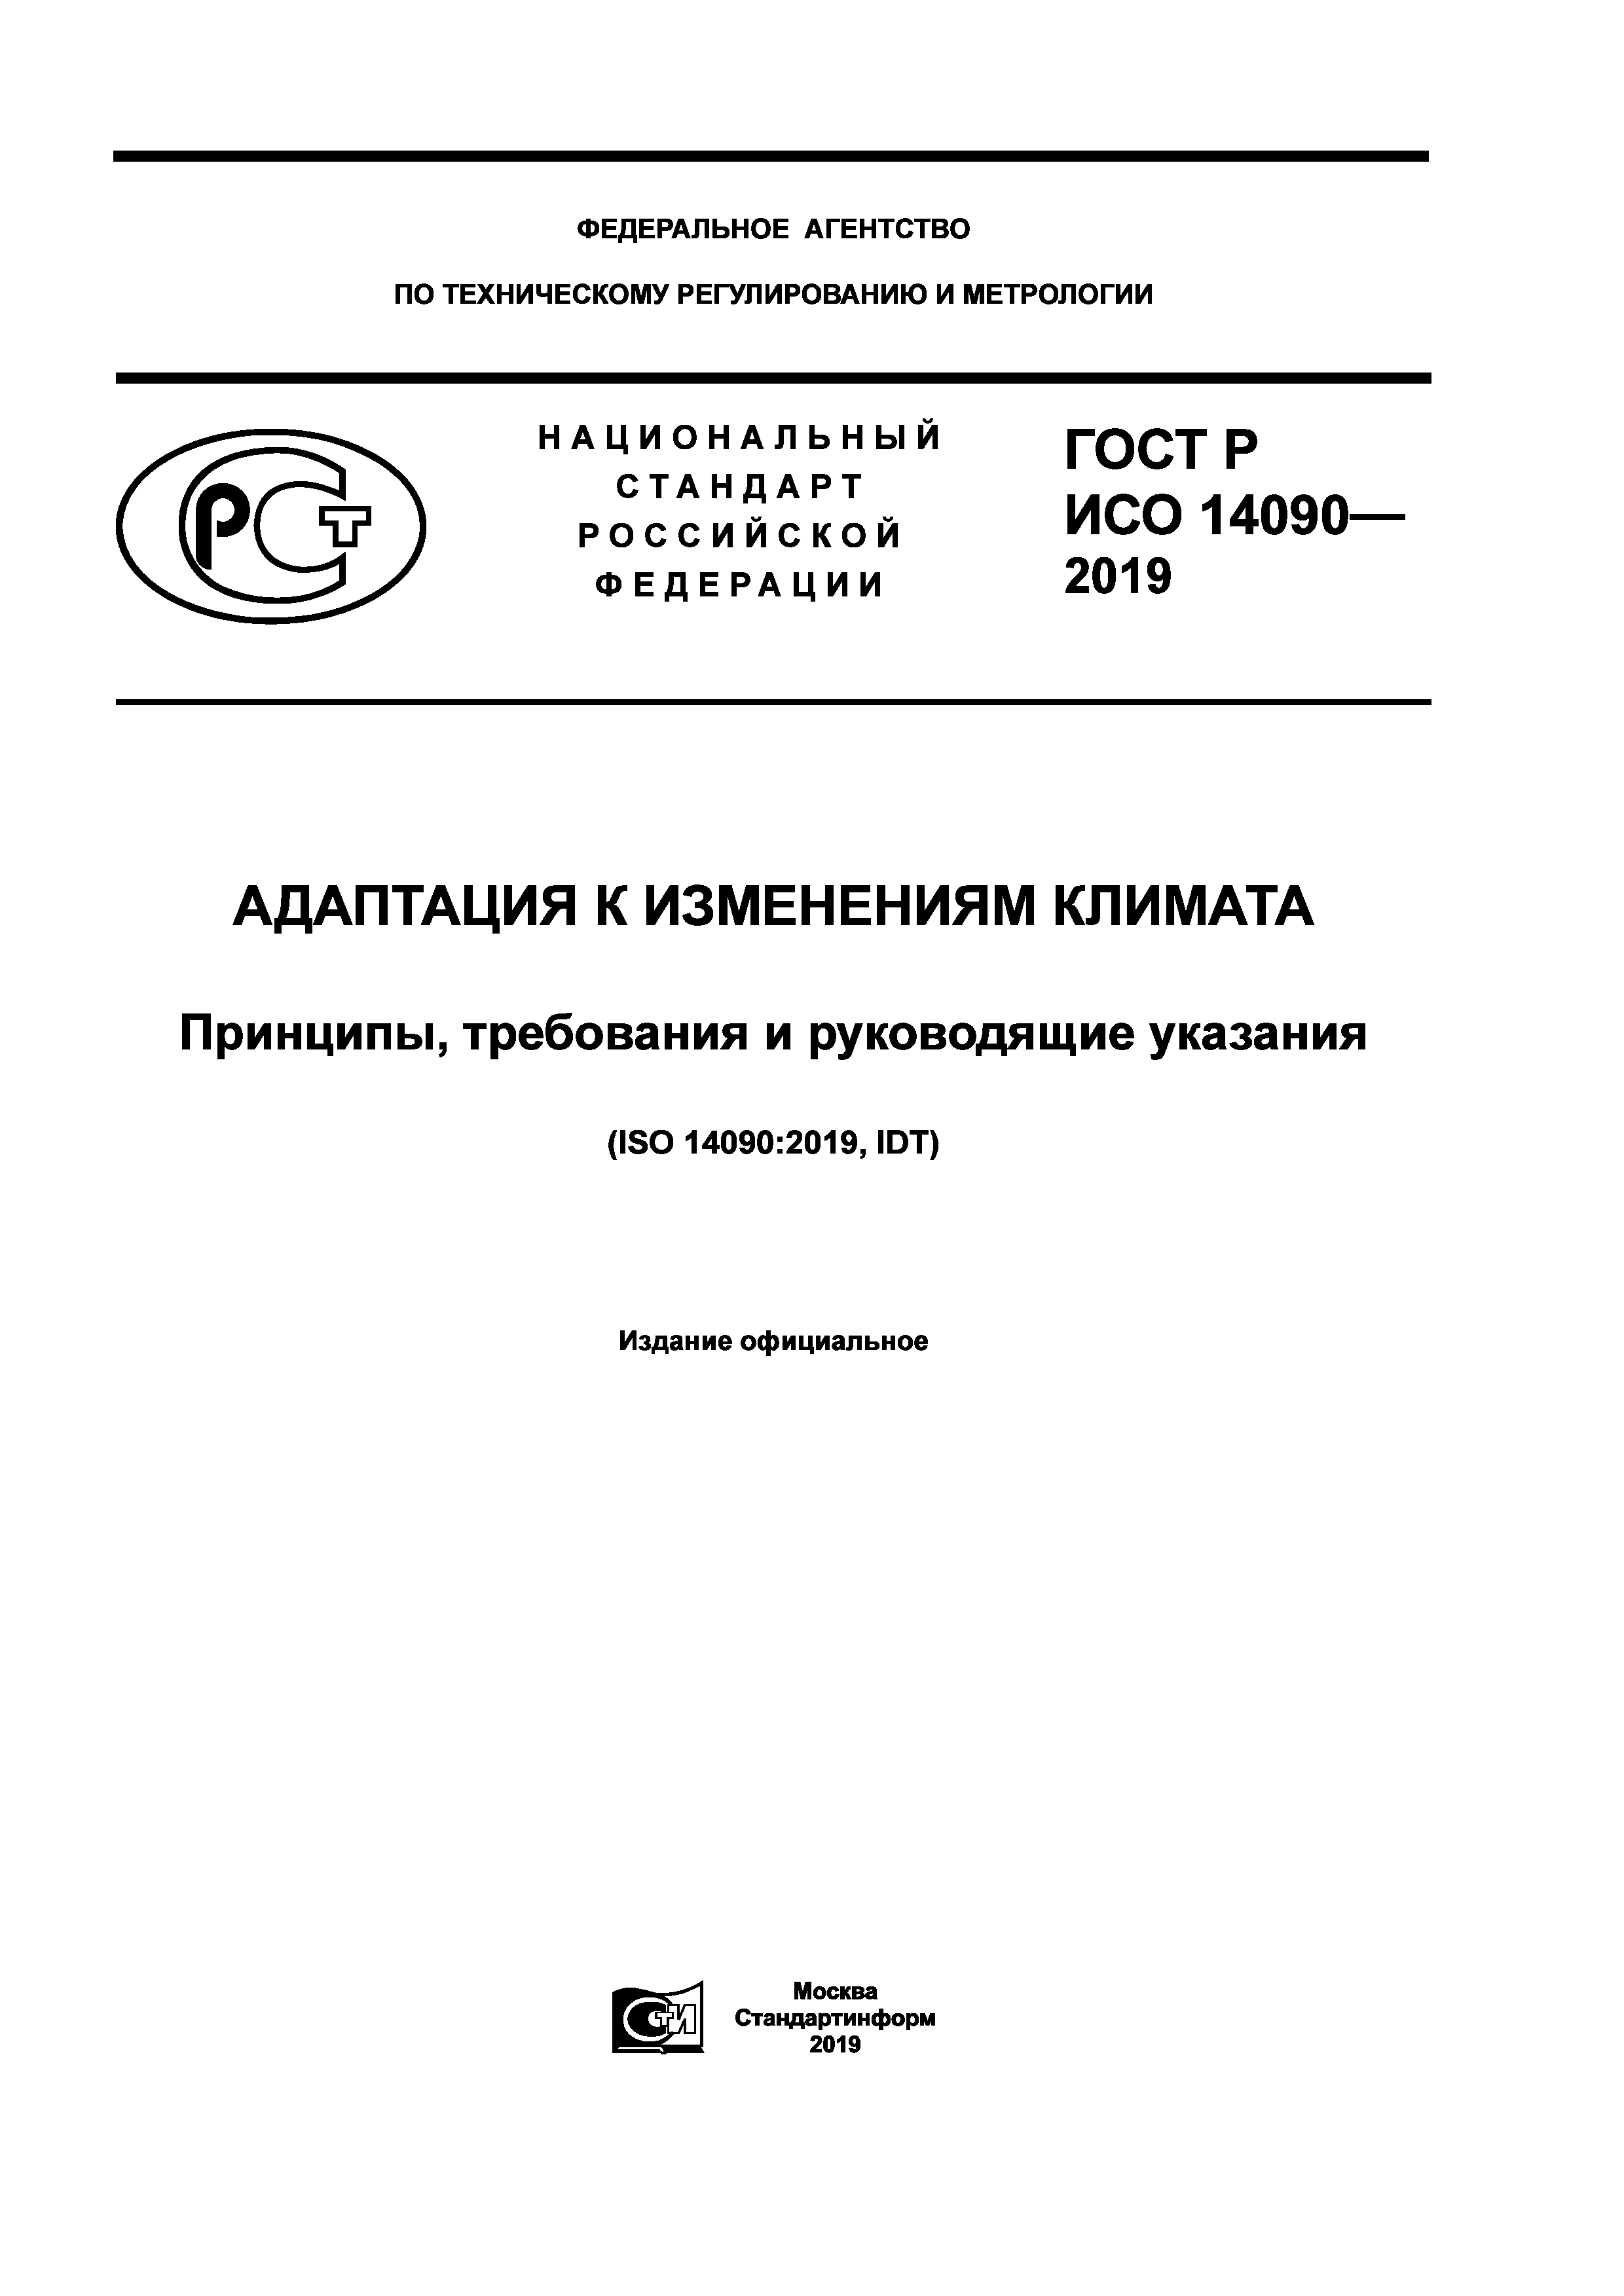 ГОСТ Р ИСО 14090-2019